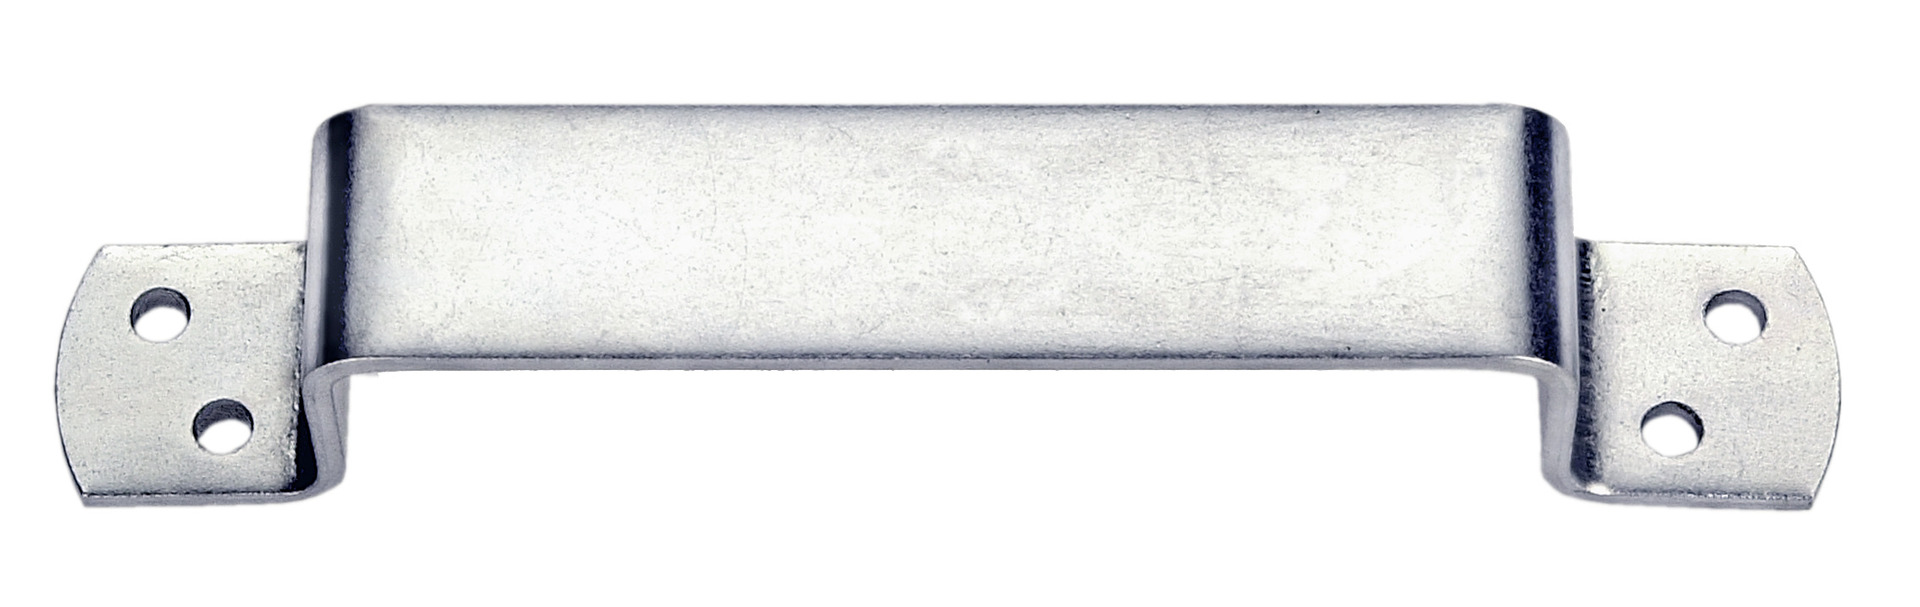 Conmetall Handgriffe verzinkt 25×200 mm